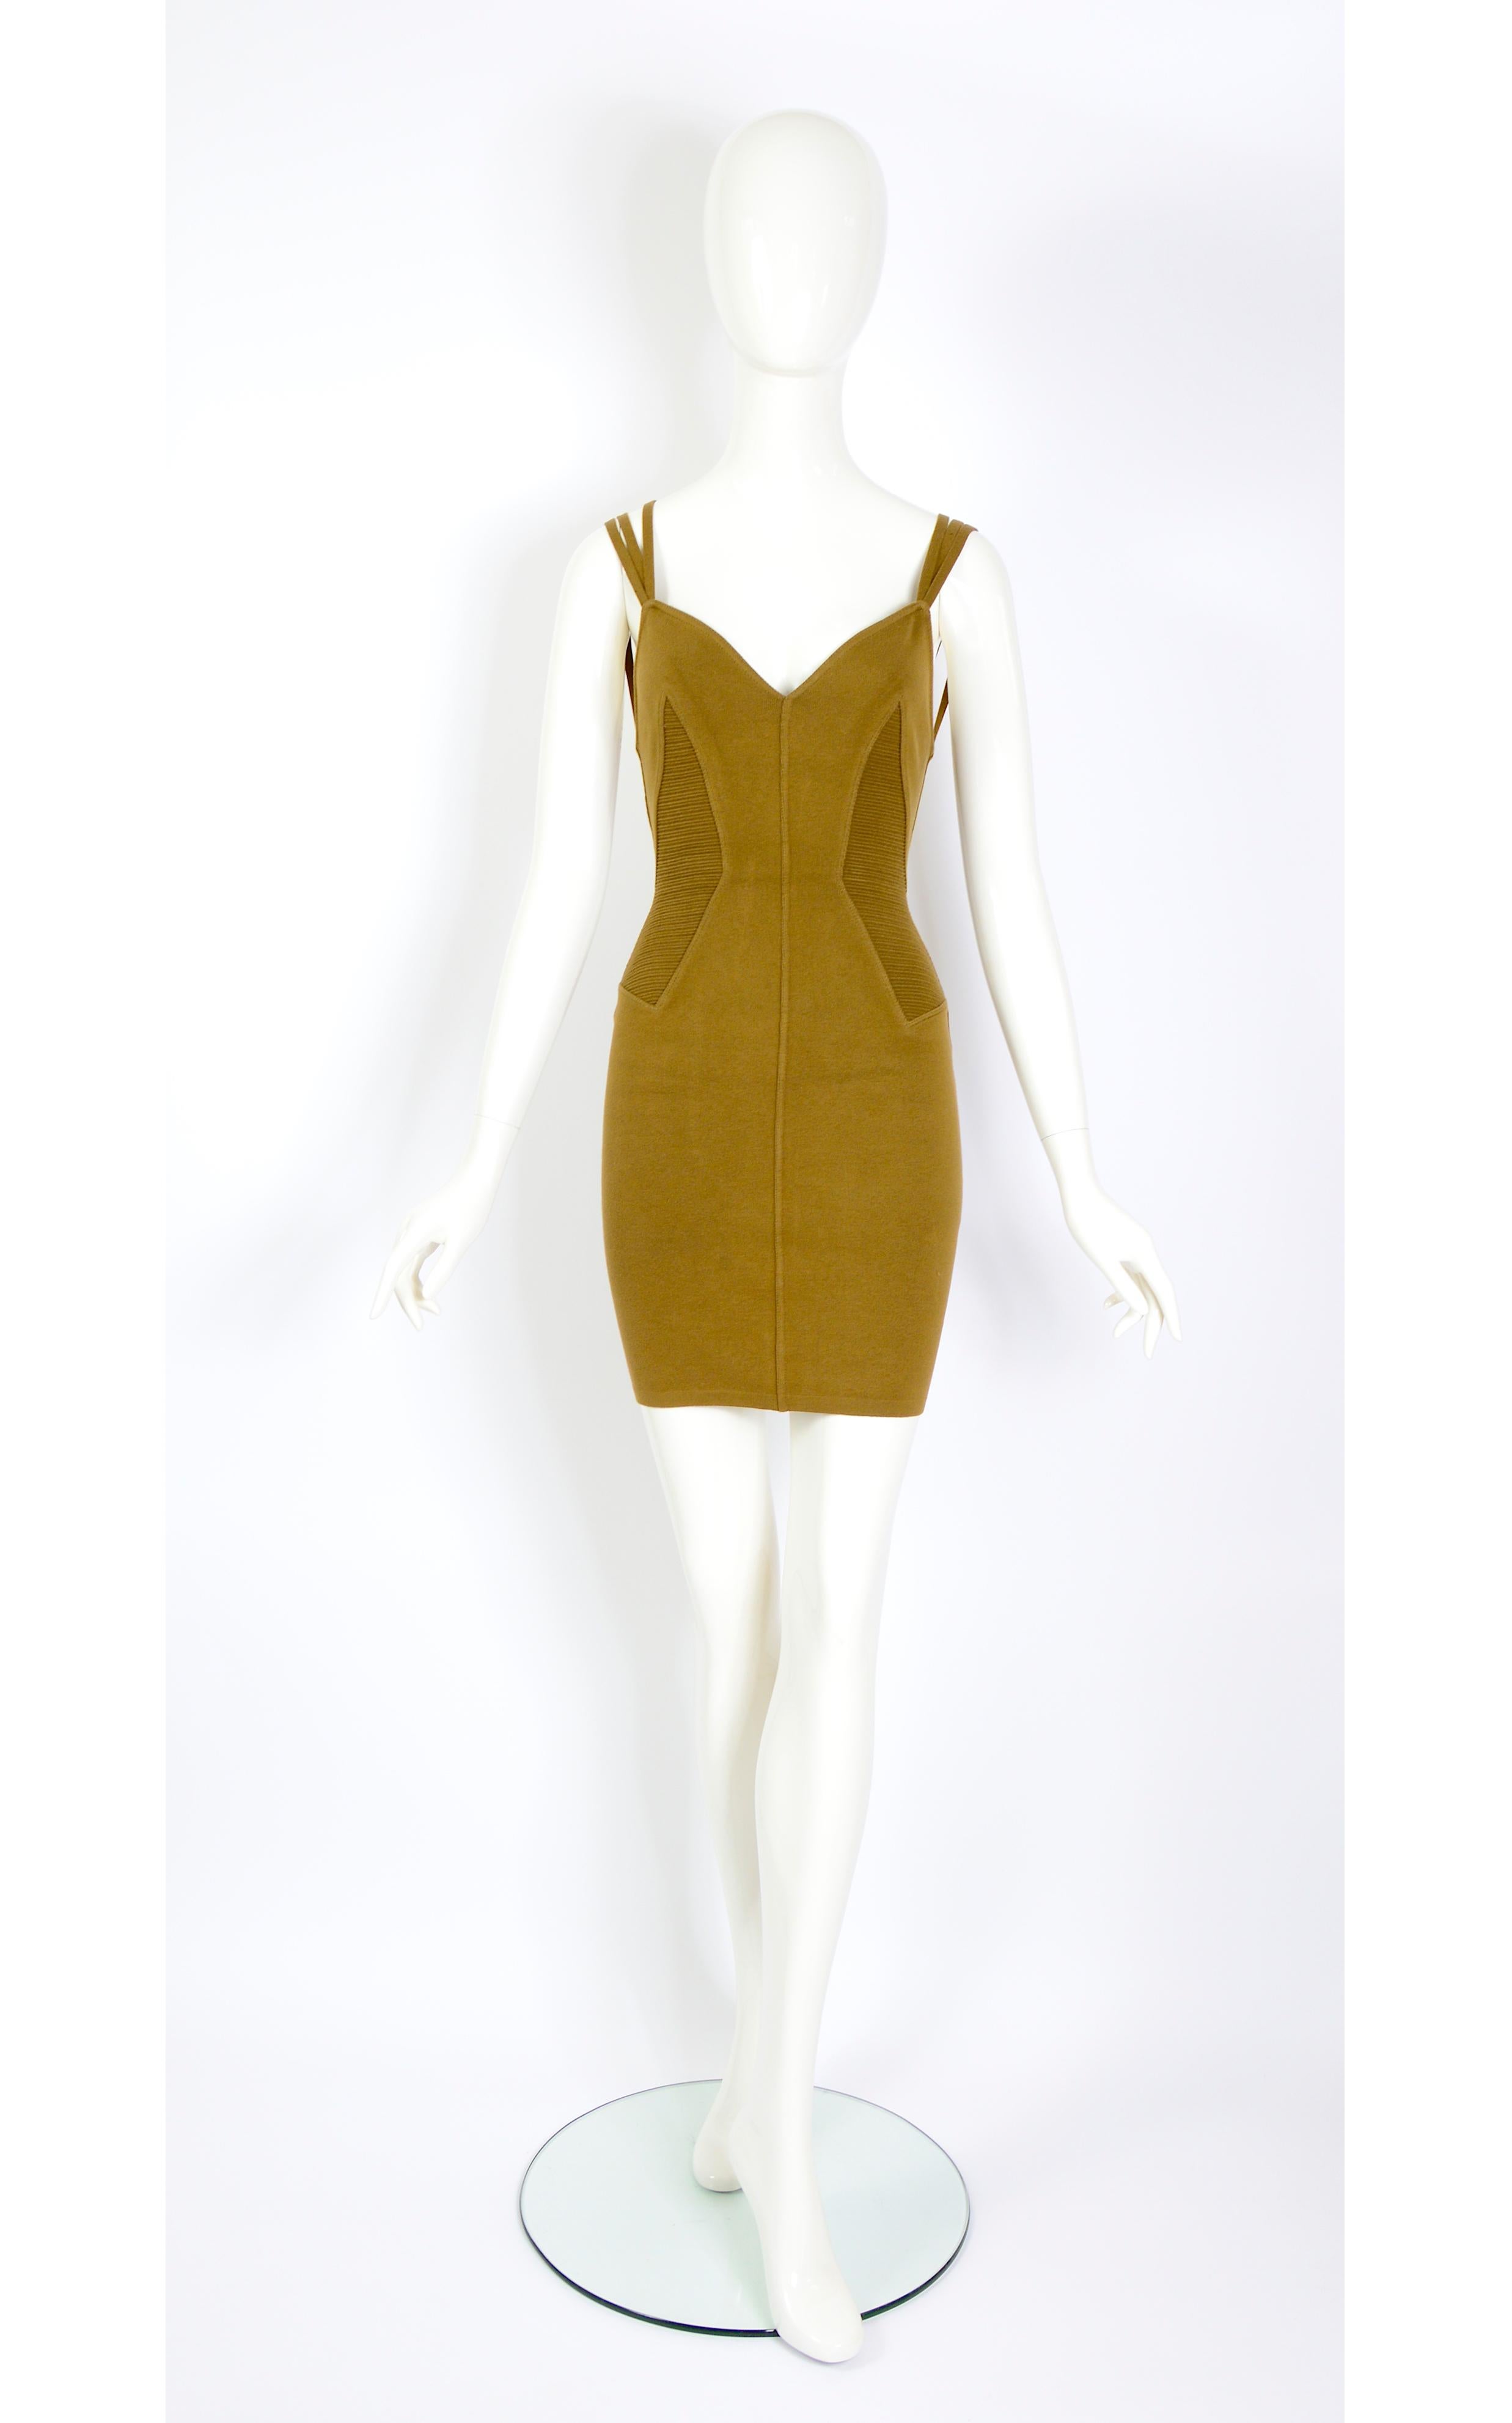 Vintage Alaïa by Azzedine Alaïa Frühjahr 1990 Laufstegkollektion strukturiertes Bodycon-Kleid.
Gerippte Textur an den Seiten mit dreifachem Riemenbesatz und  schlüpft einfach über 
Hergestellt aus 85% Baumwolle und 15% Elastan.
Die Messungen sind